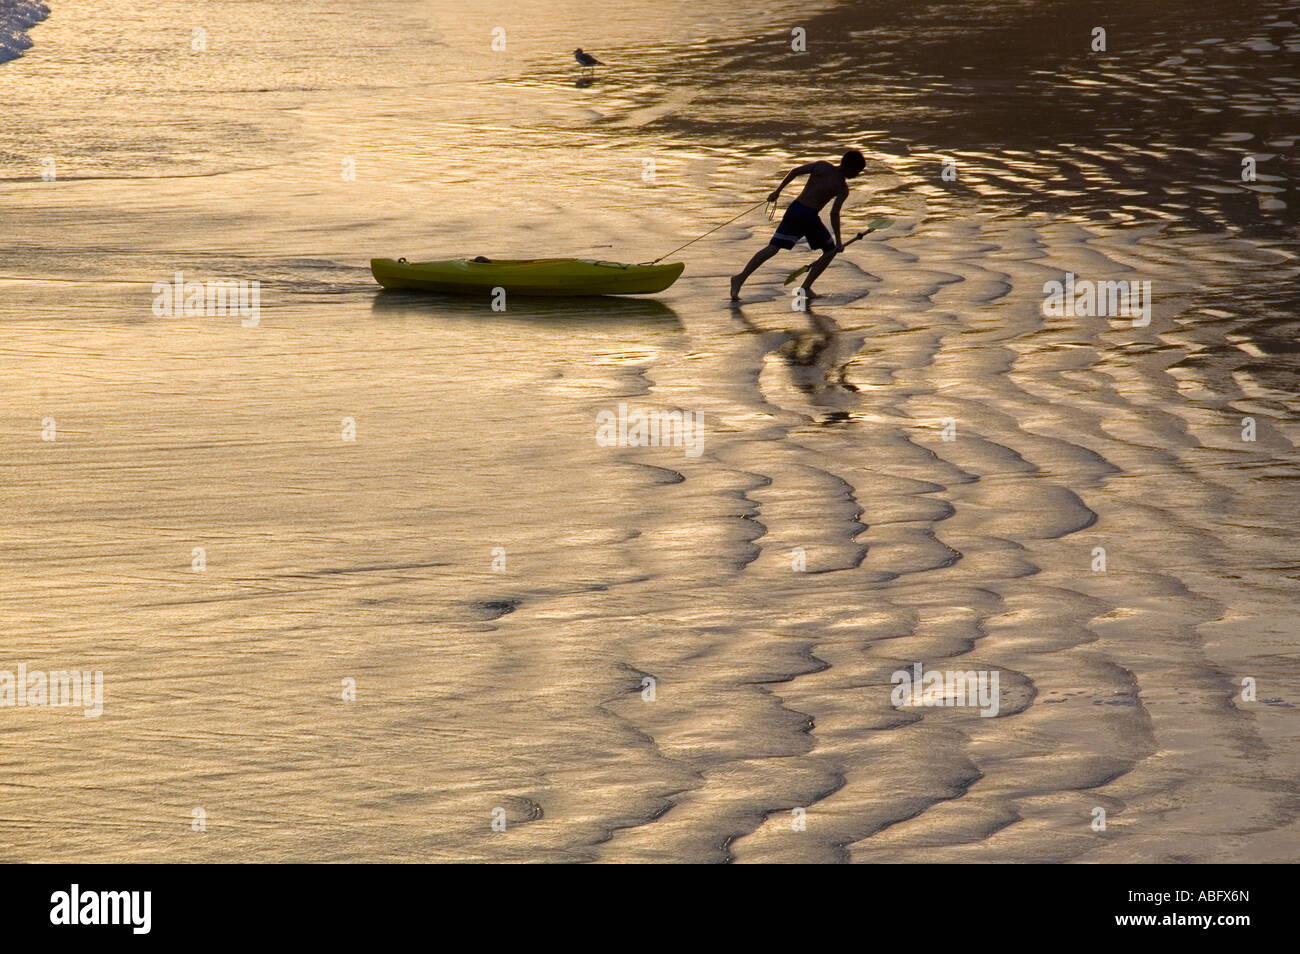 Un homme passe sa kayak sur le sable humide le long de la plage. Banque D'Images